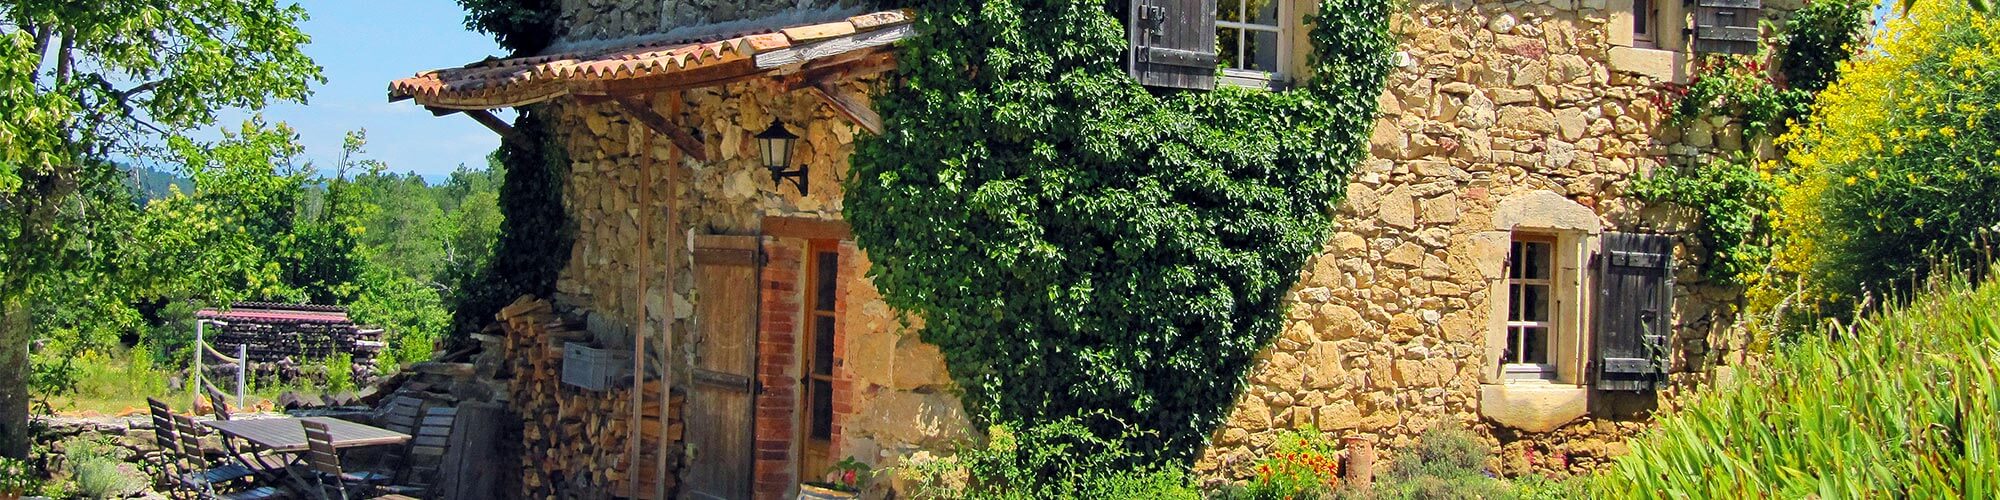 Schmuckes Ferienhaus in der Ardèche - mit Hotel-Service